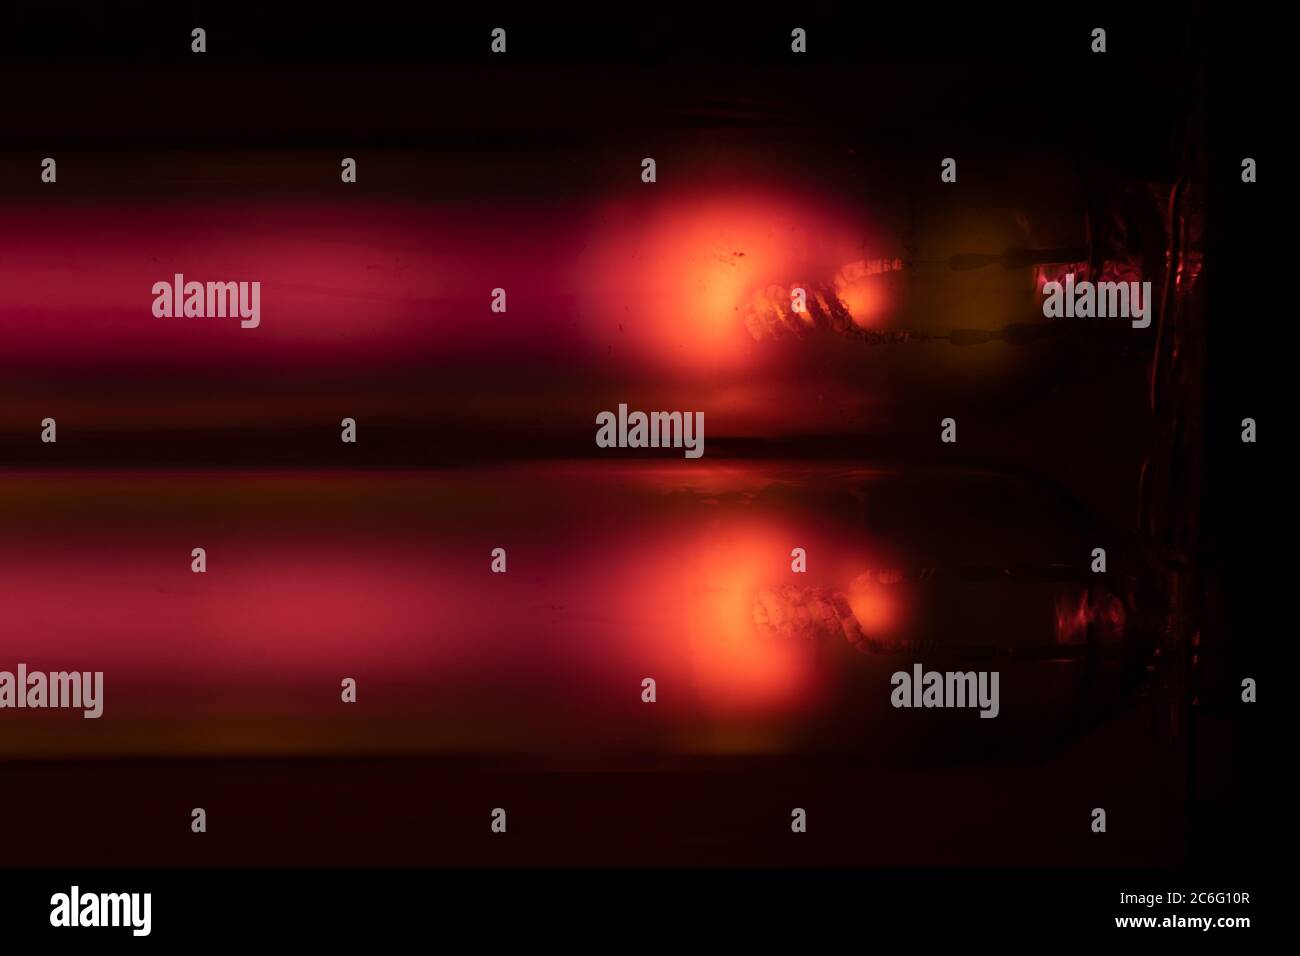 Nahaufnahme von Elektroden oder Kathoden in einer SOX-Lampe mit 135 W. Der  Ausfluss ist in erster Linie rot, bis das feste Natriummetall verdampft und oranges  Licht erzeugt Stockfotografie - Alamy